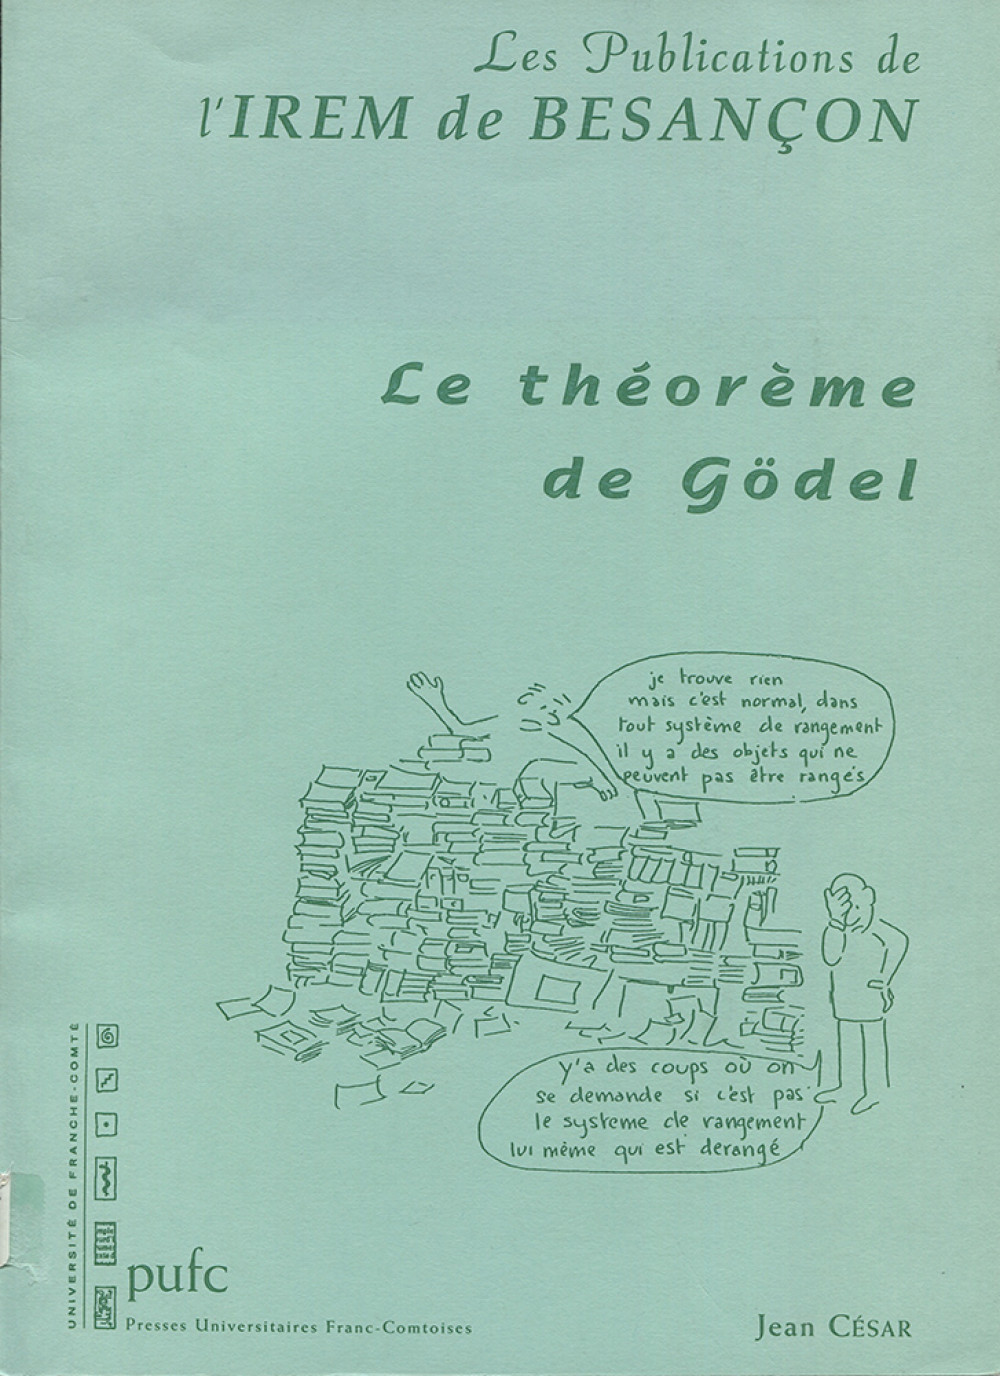 Le théorème de Gödel